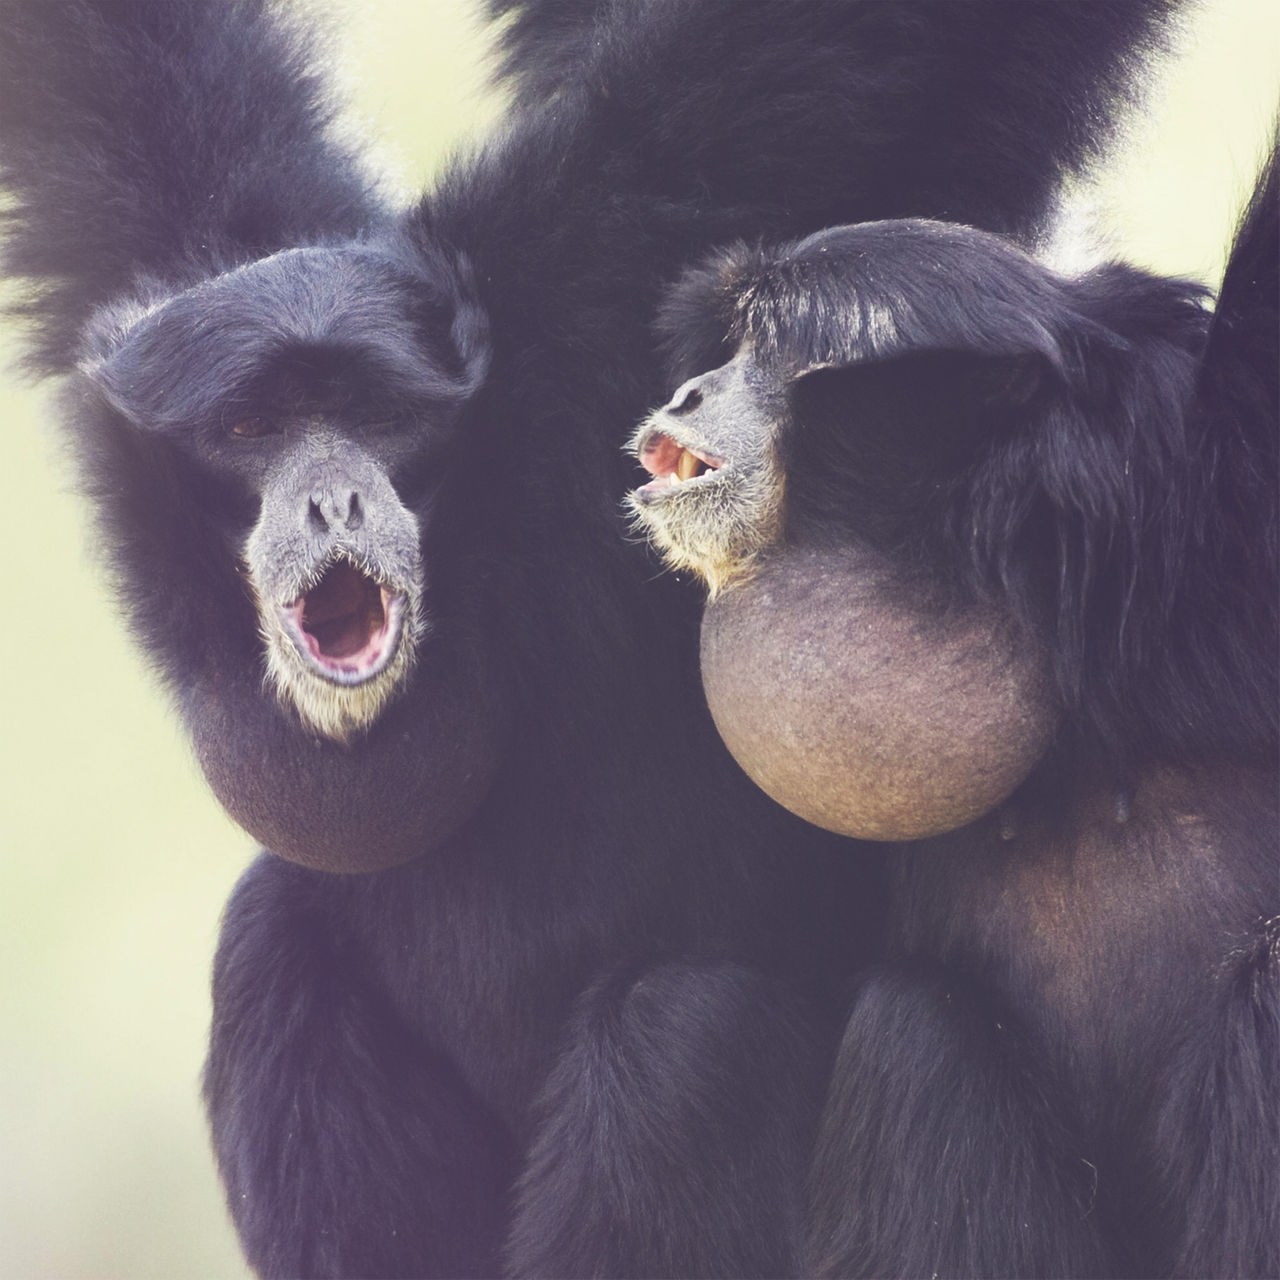 Zwei schwarze Affen hängen von oben herab und schauen mit geöffneten Mündern in die gleiche Richtung. Am Hals haben sie einen aufgeblähten, grauen Kehlsack. 